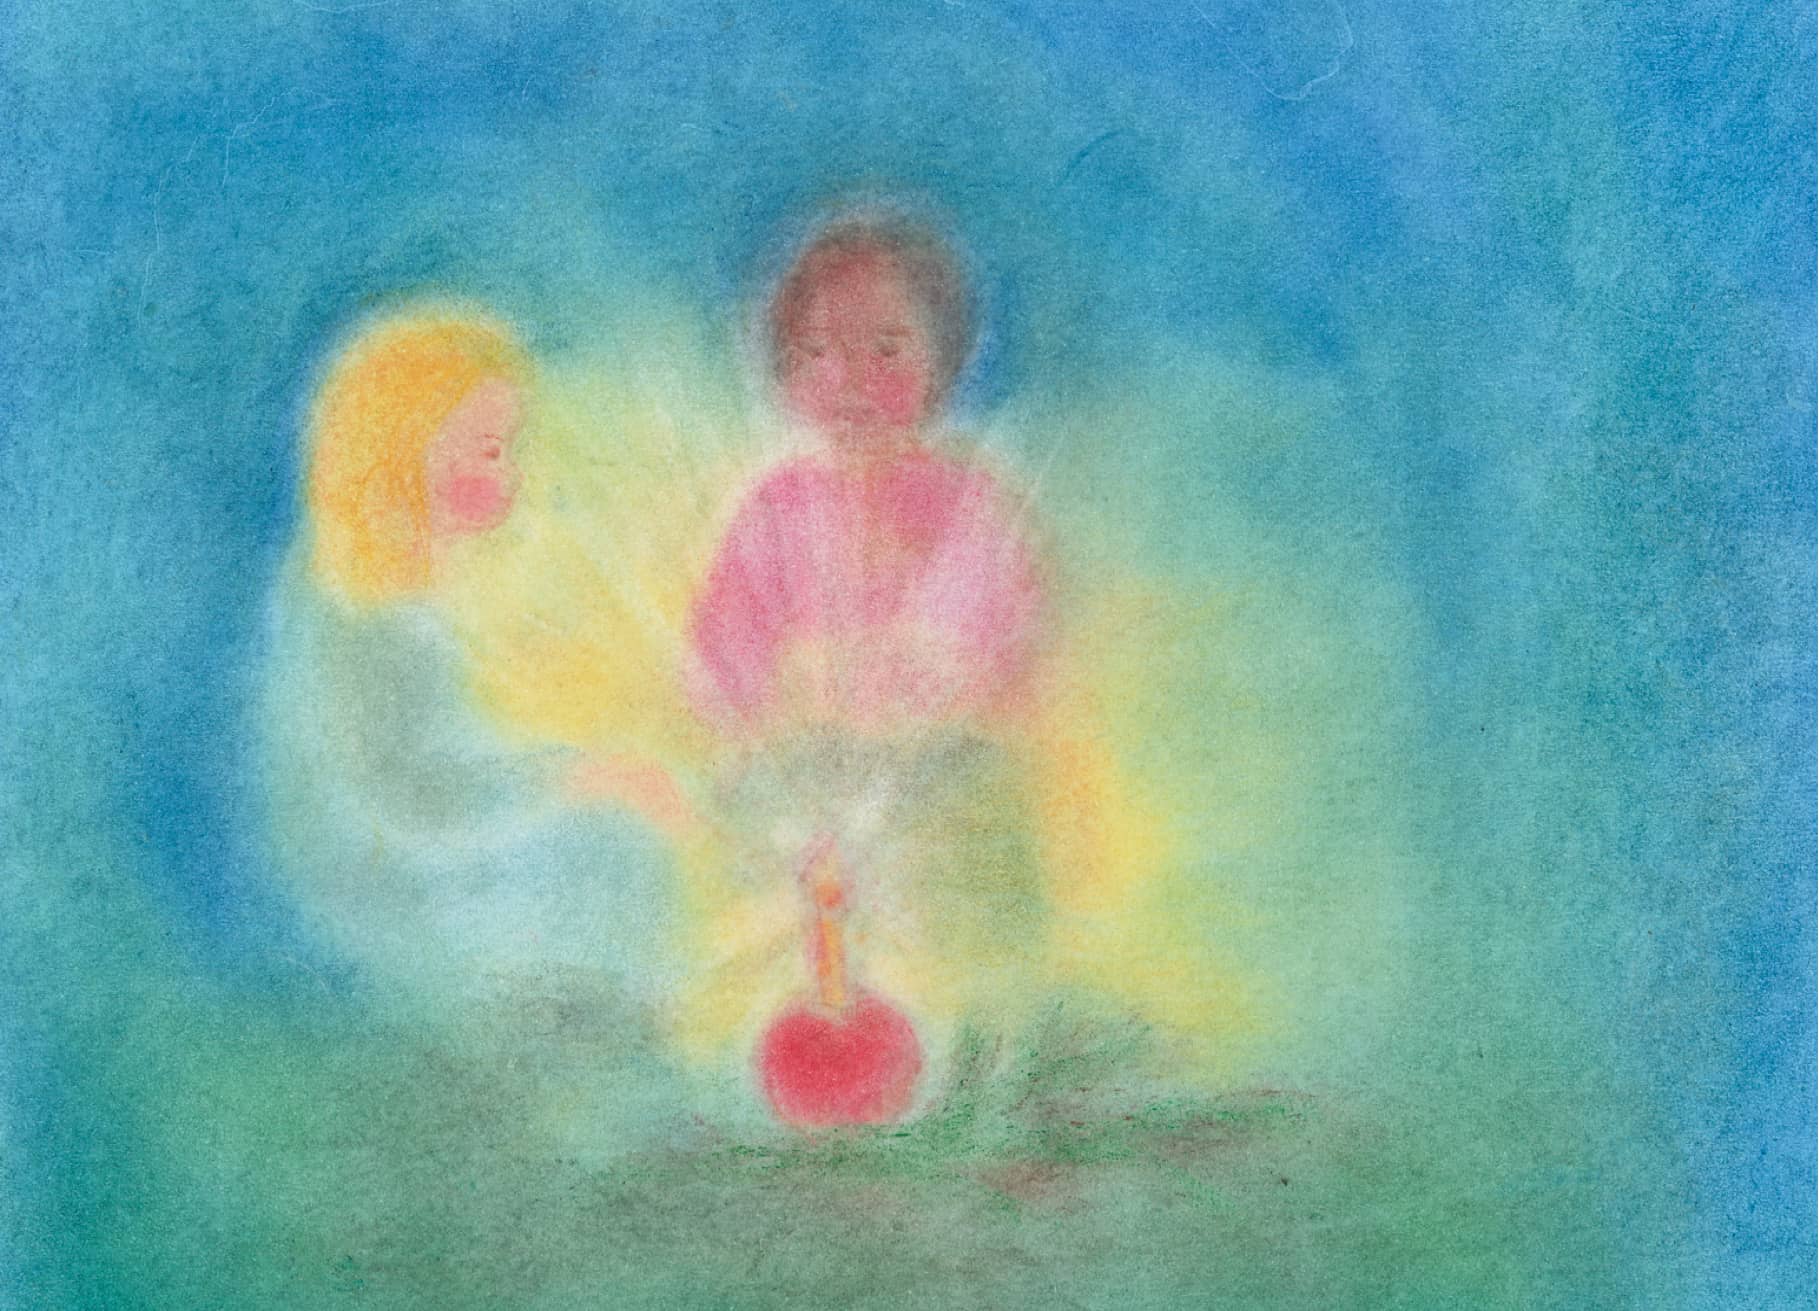 Zarte Seccorell-Postkarte "Adventslicht" mit Kindern und Kerzenschein, eingefangen in sanften Farbübergängen und weichen Konturen.